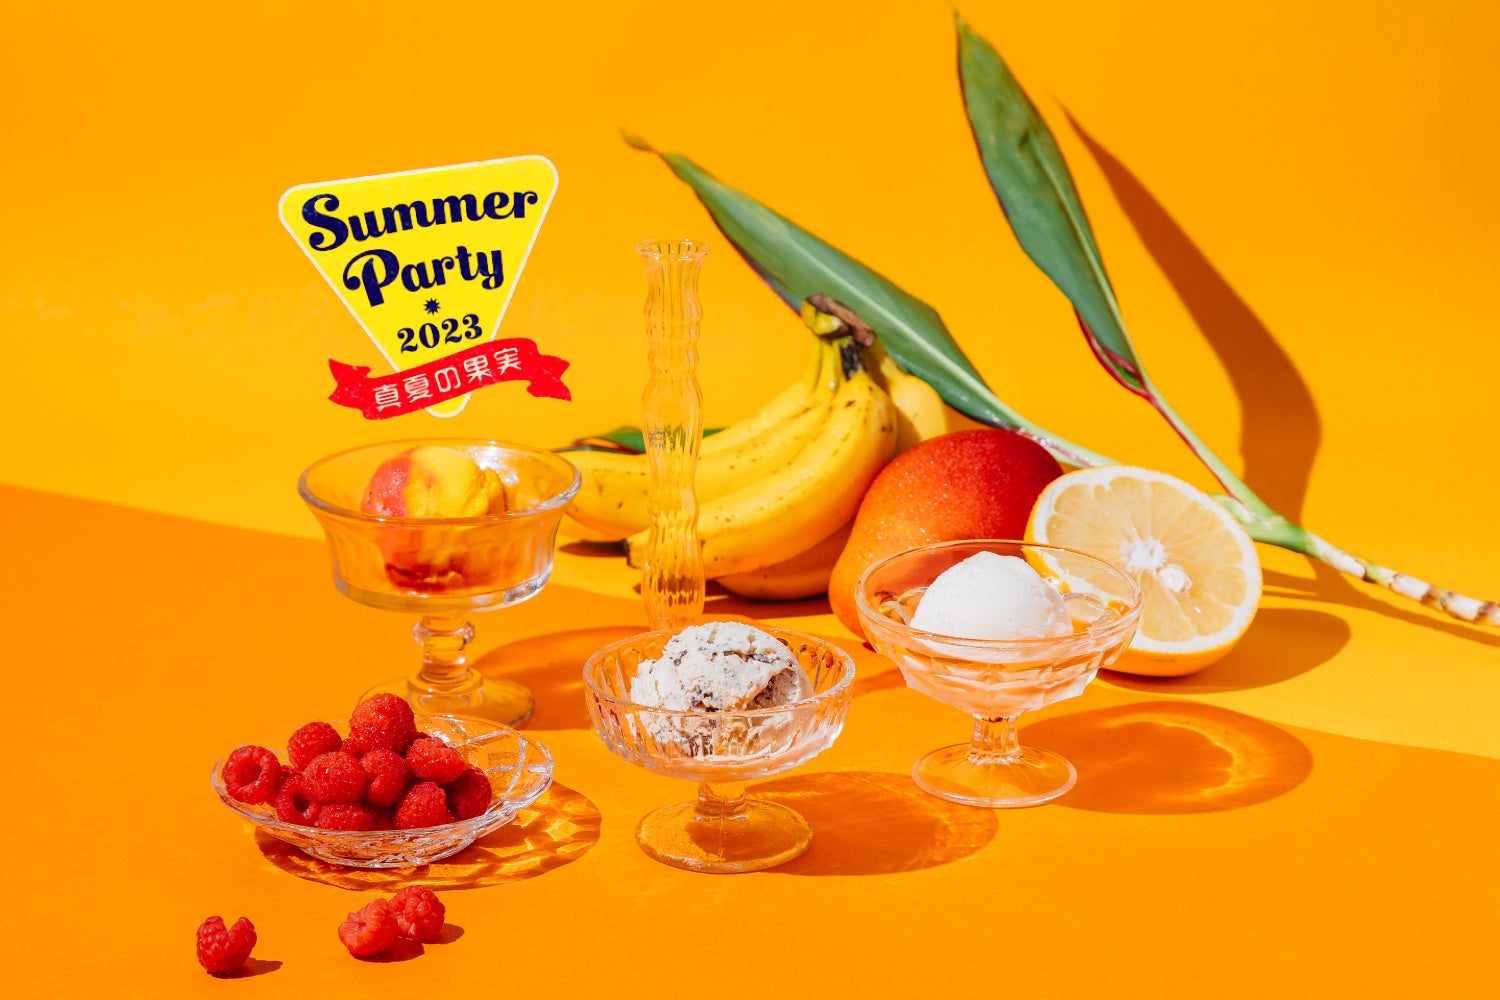 無添加クラフトアイスクリーム「HANDELS VÄGEN」から、「真夏の果実」をテーマにした2023年の夏限定フレーバーが登場。2023年5月19日(金)より販売開始。